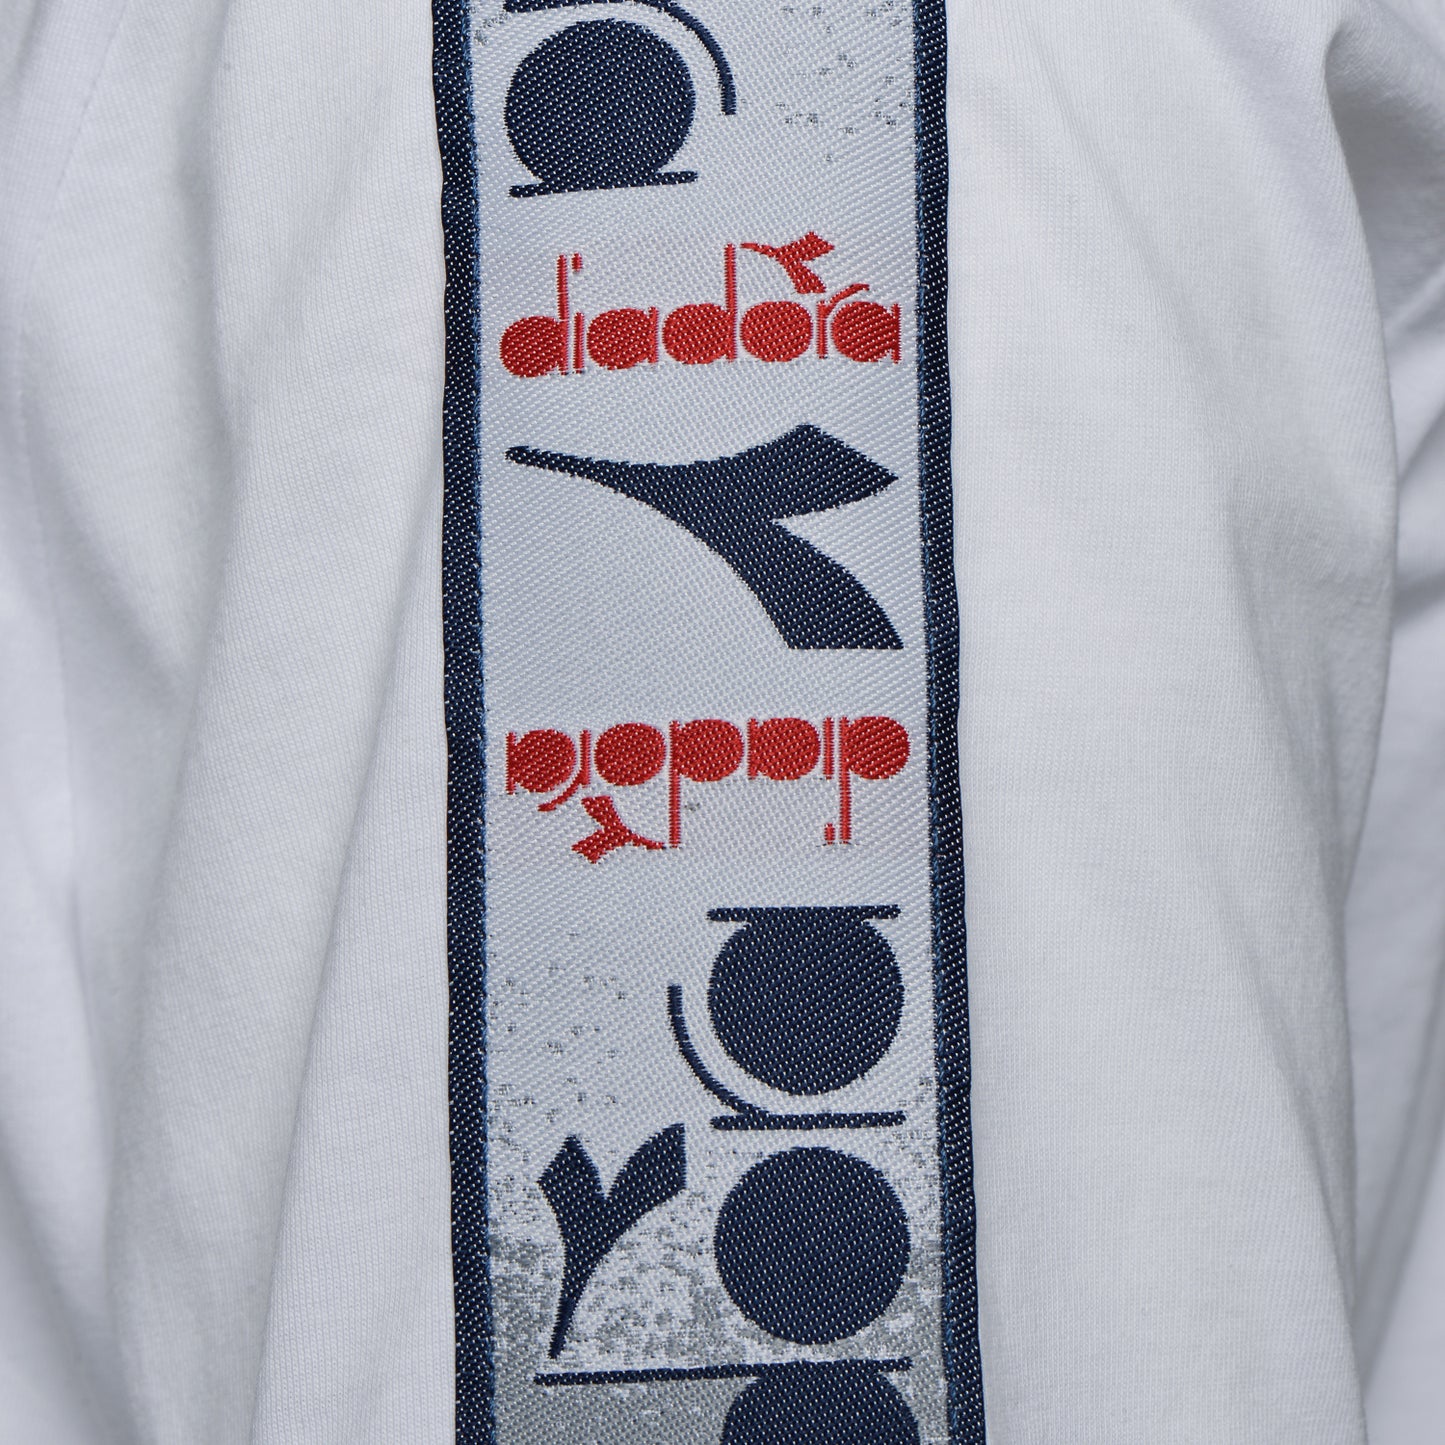 Diadora - T-shirt SS 5palle Offside Optical White